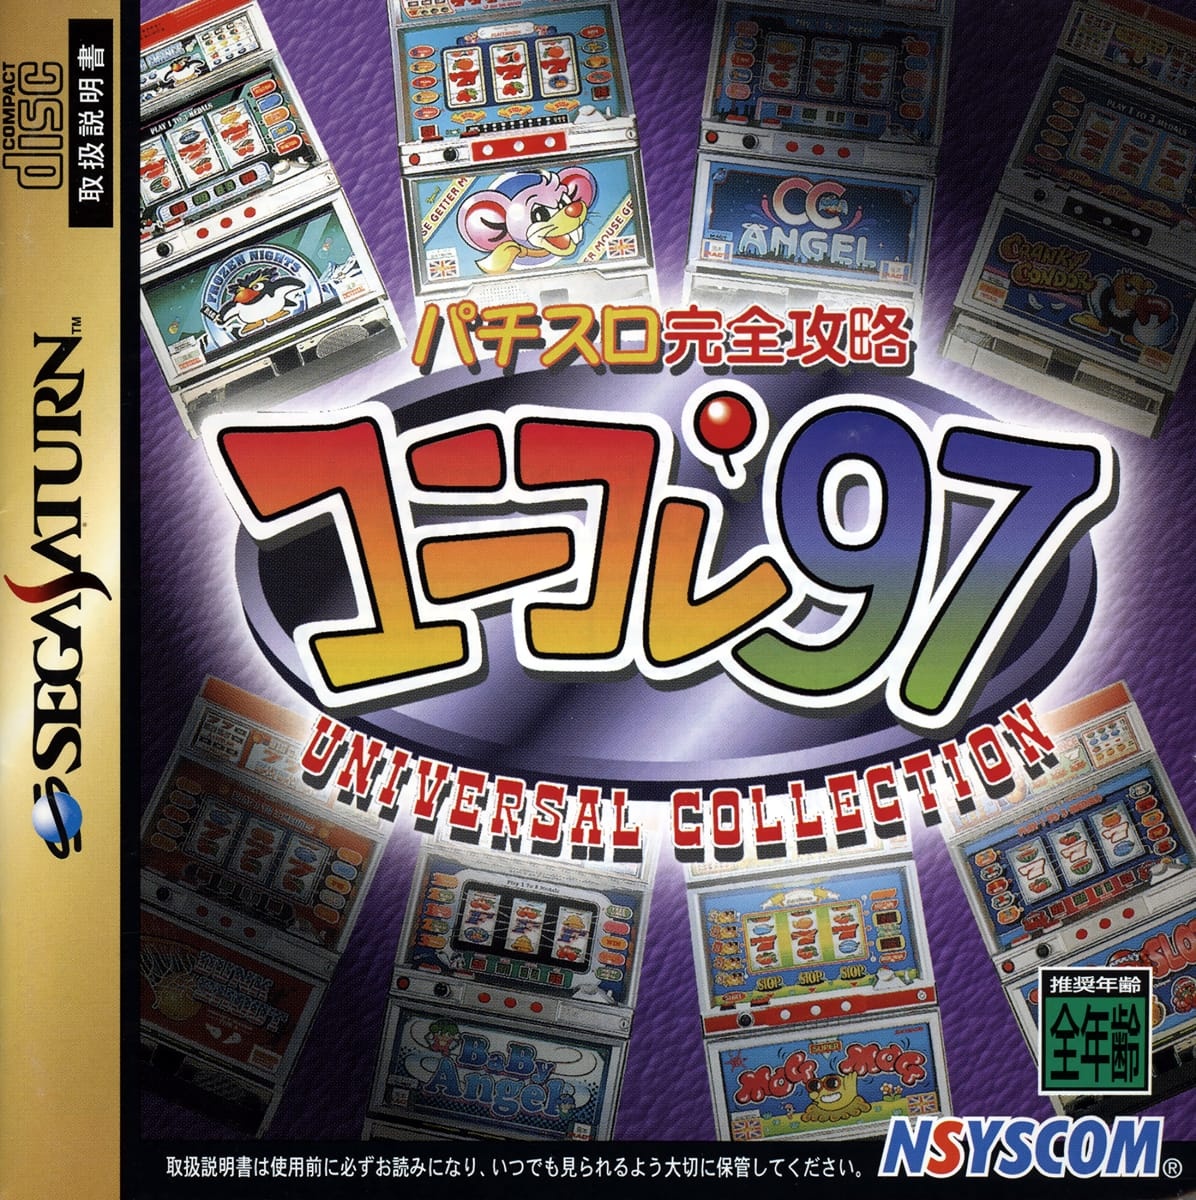 Pachi-Slot Kanzen Kouryaku Uni-Colle97 cover